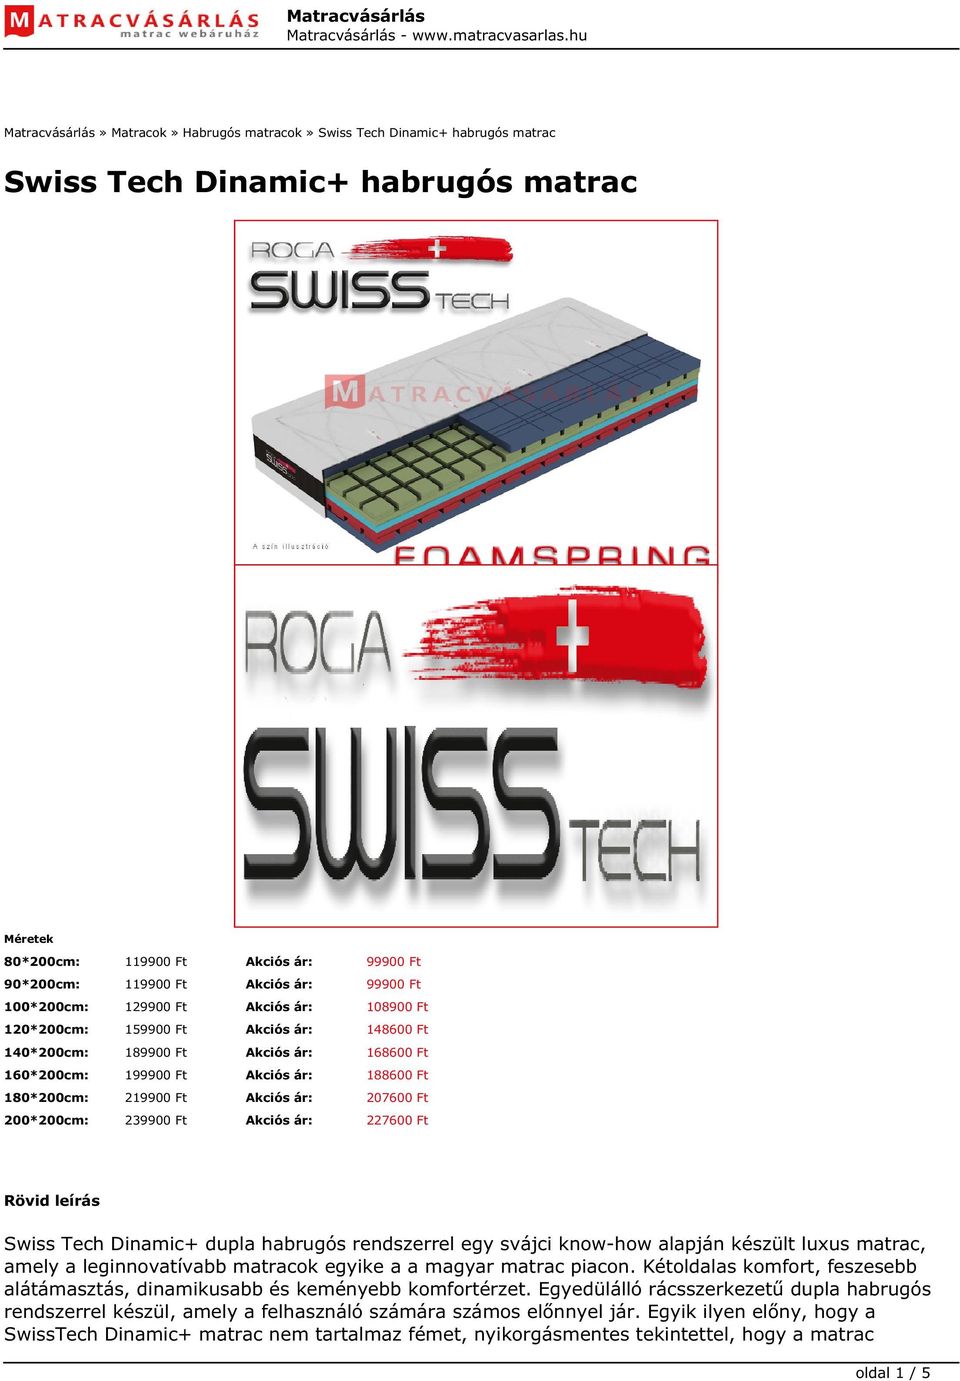 Swiss Tech Dinamic+ habrugós matrac - PDF Ingyenes letöltés